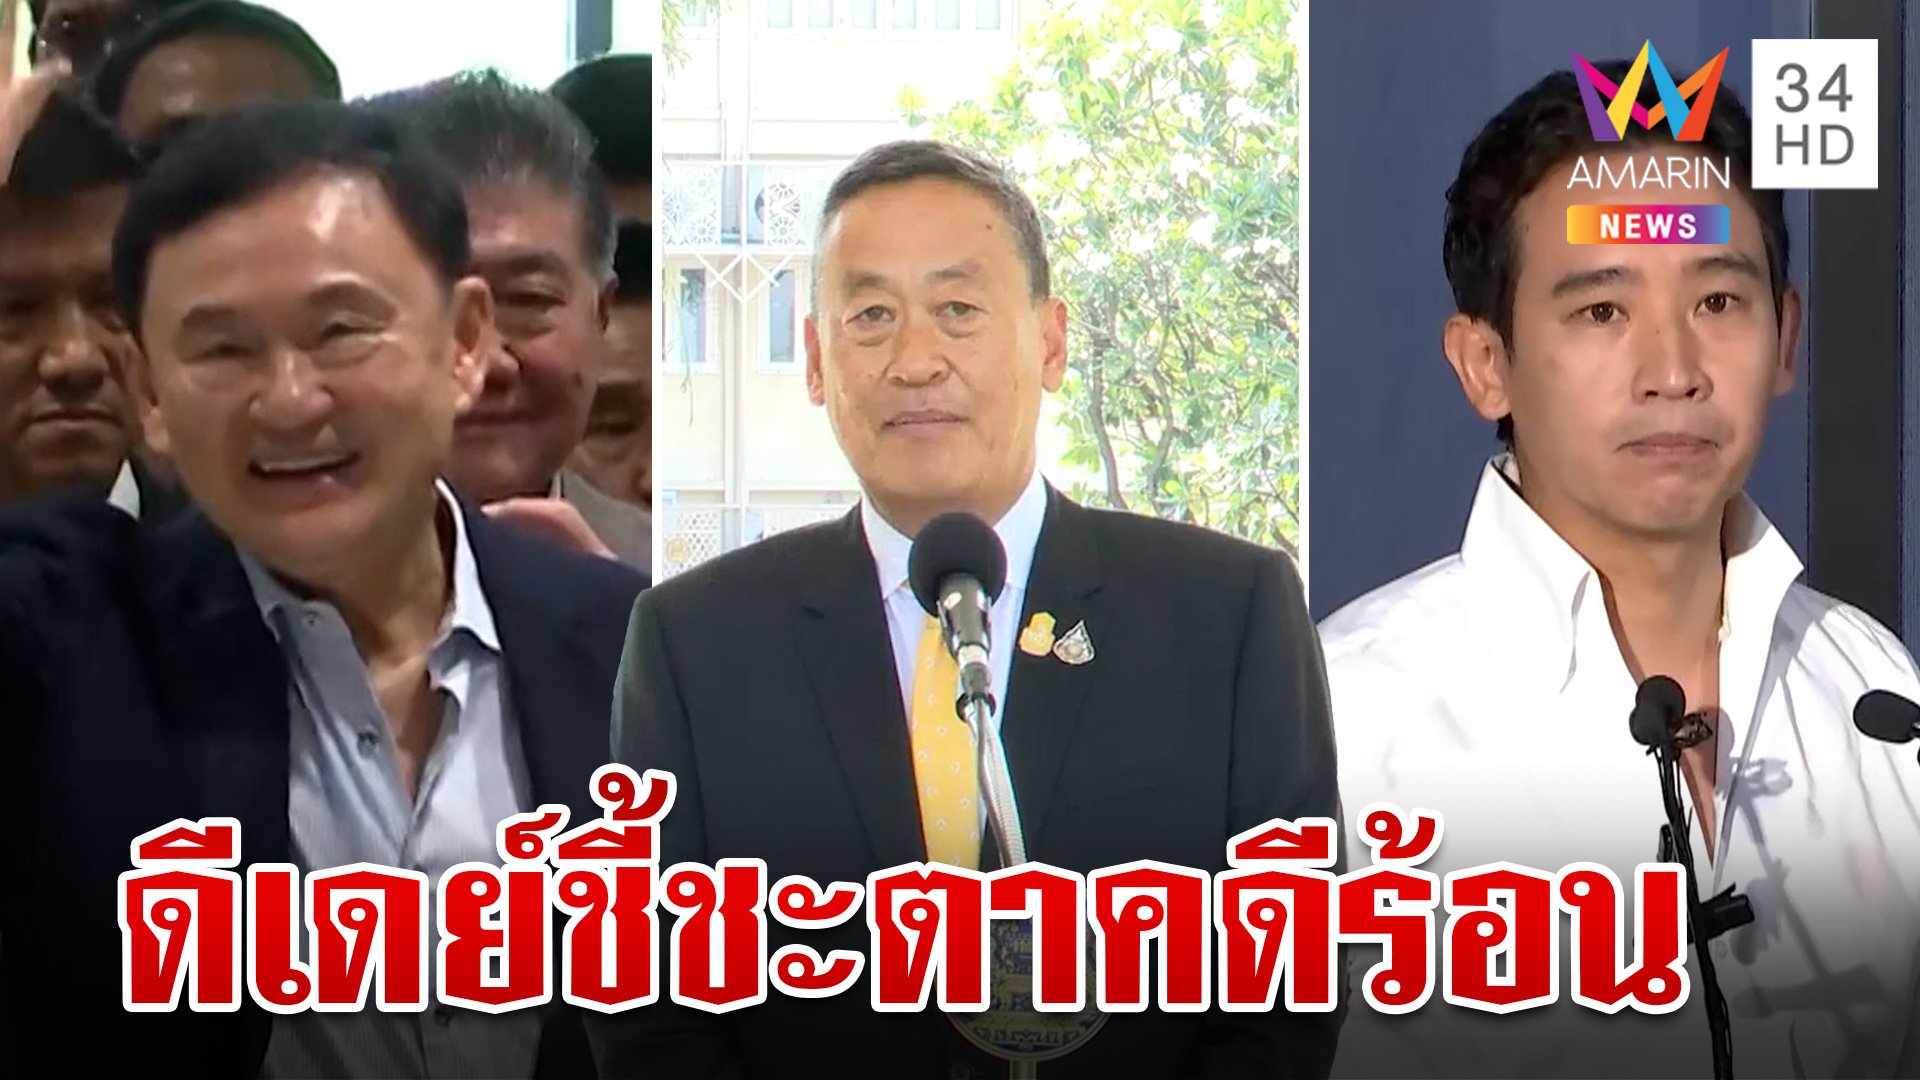 ลุ้น 4 คดีร้อนเขย่าการเมืองไทย เศรษฐา-ทักษิณ-ก้าวไกล ไปต่อหรือพอแค่นี้ | ทุบโต๊ะข่าว | 17 มิ.ย. 67 | AMARIN TVHD34